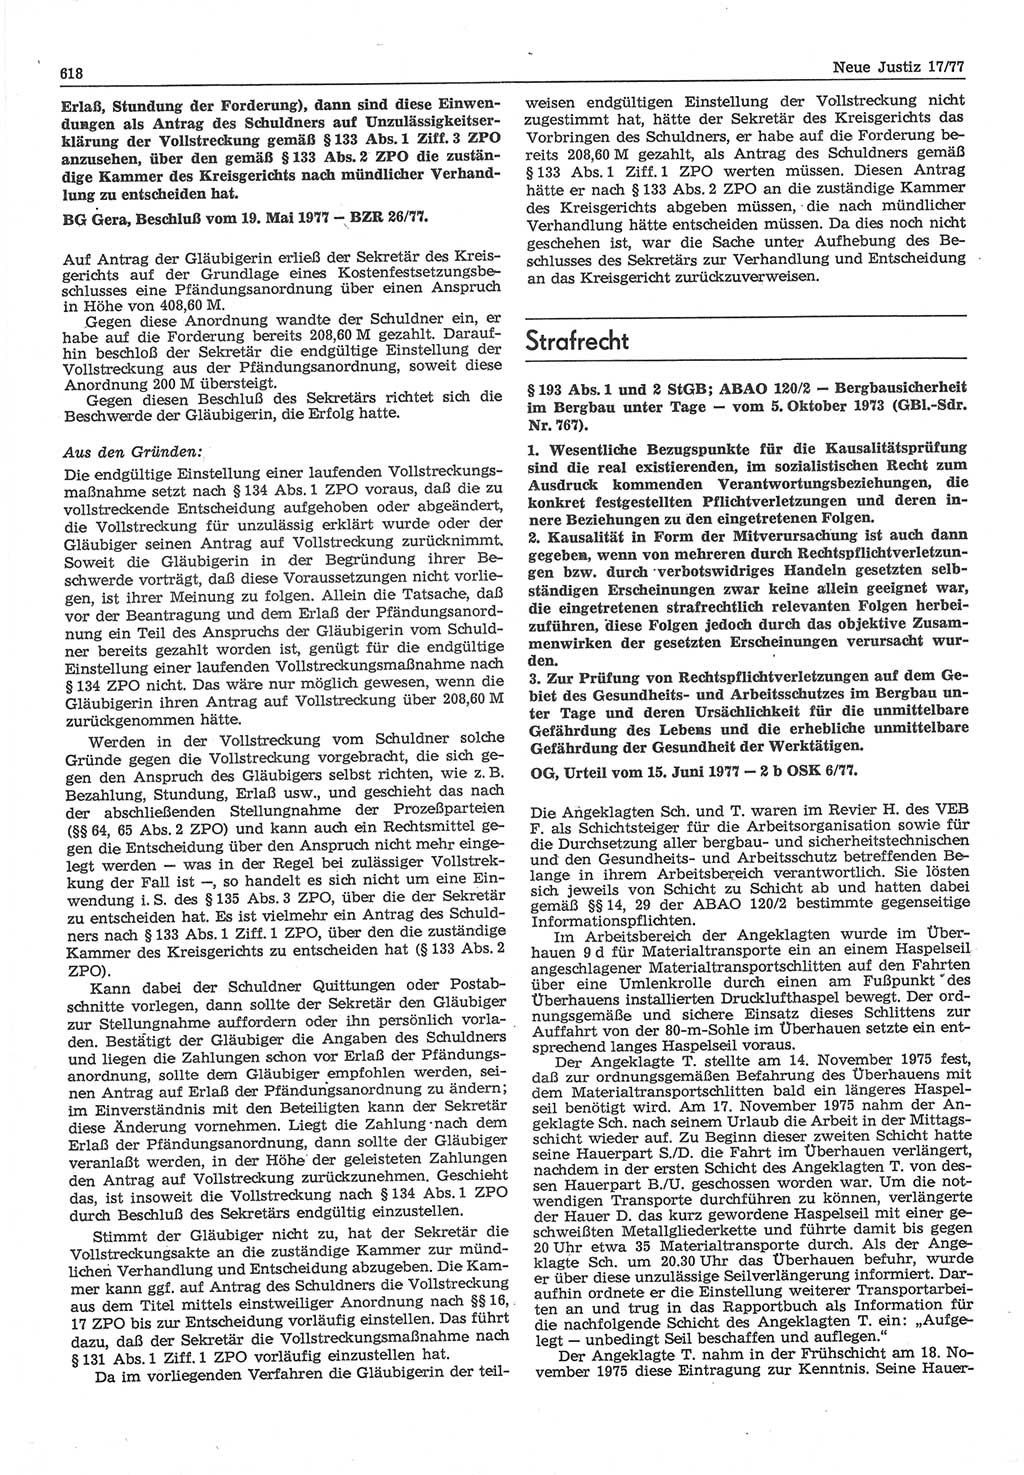 Neue Justiz (NJ), Zeitschrift für Recht und Rechtswissenschaft-Zeitschrift, sozialistisches Recht und Gesetzlichkeit, 31. Jahrgang 1977, Seite 618 (NJ DDR 1977, S. 618)